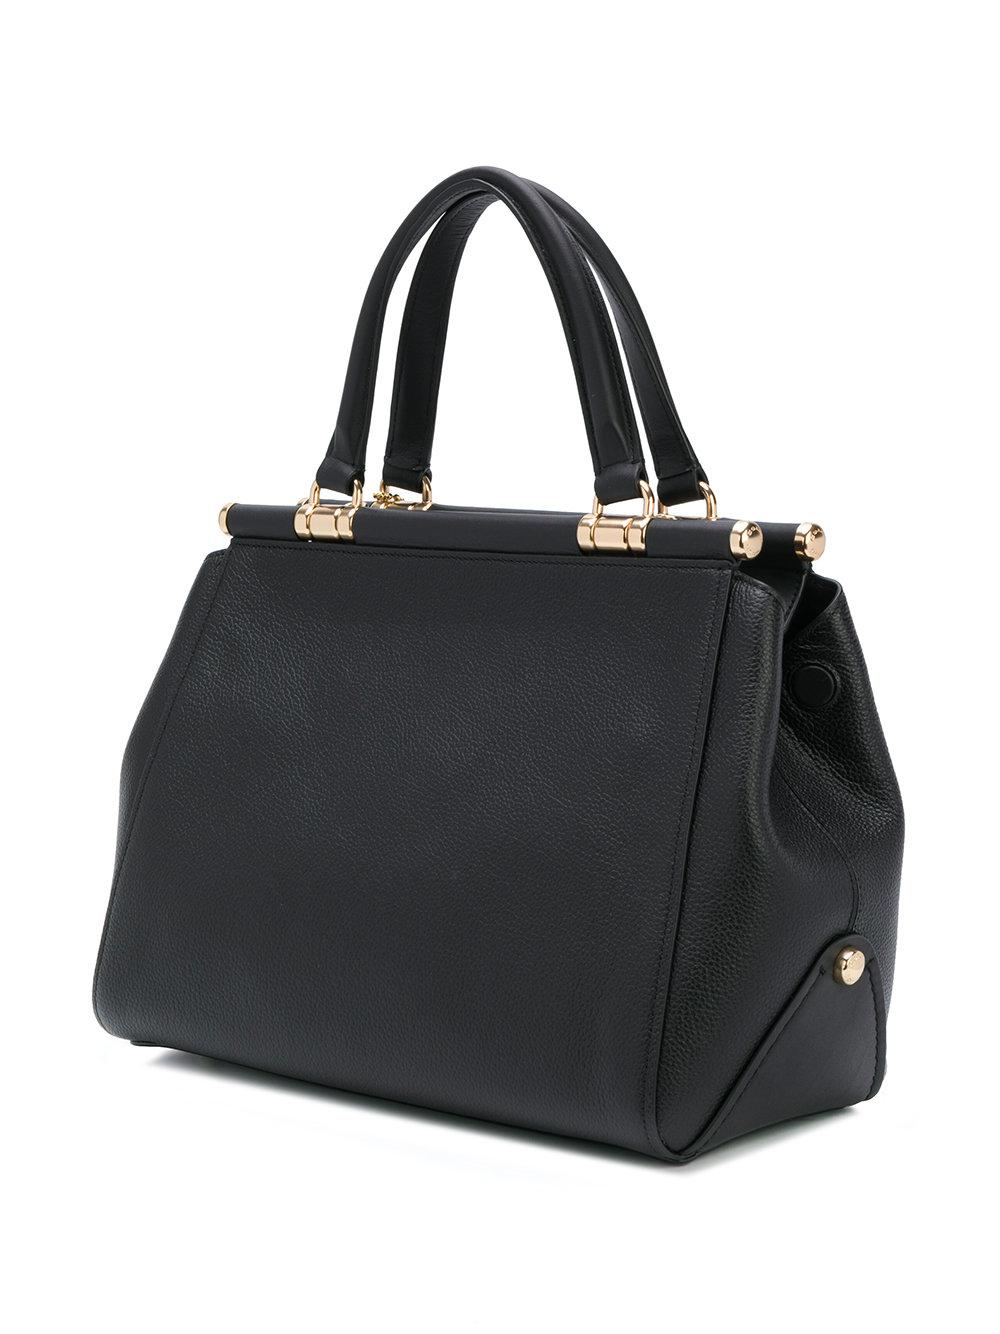 COACH Leather Grace Shoulder Bag in Black - Lyst